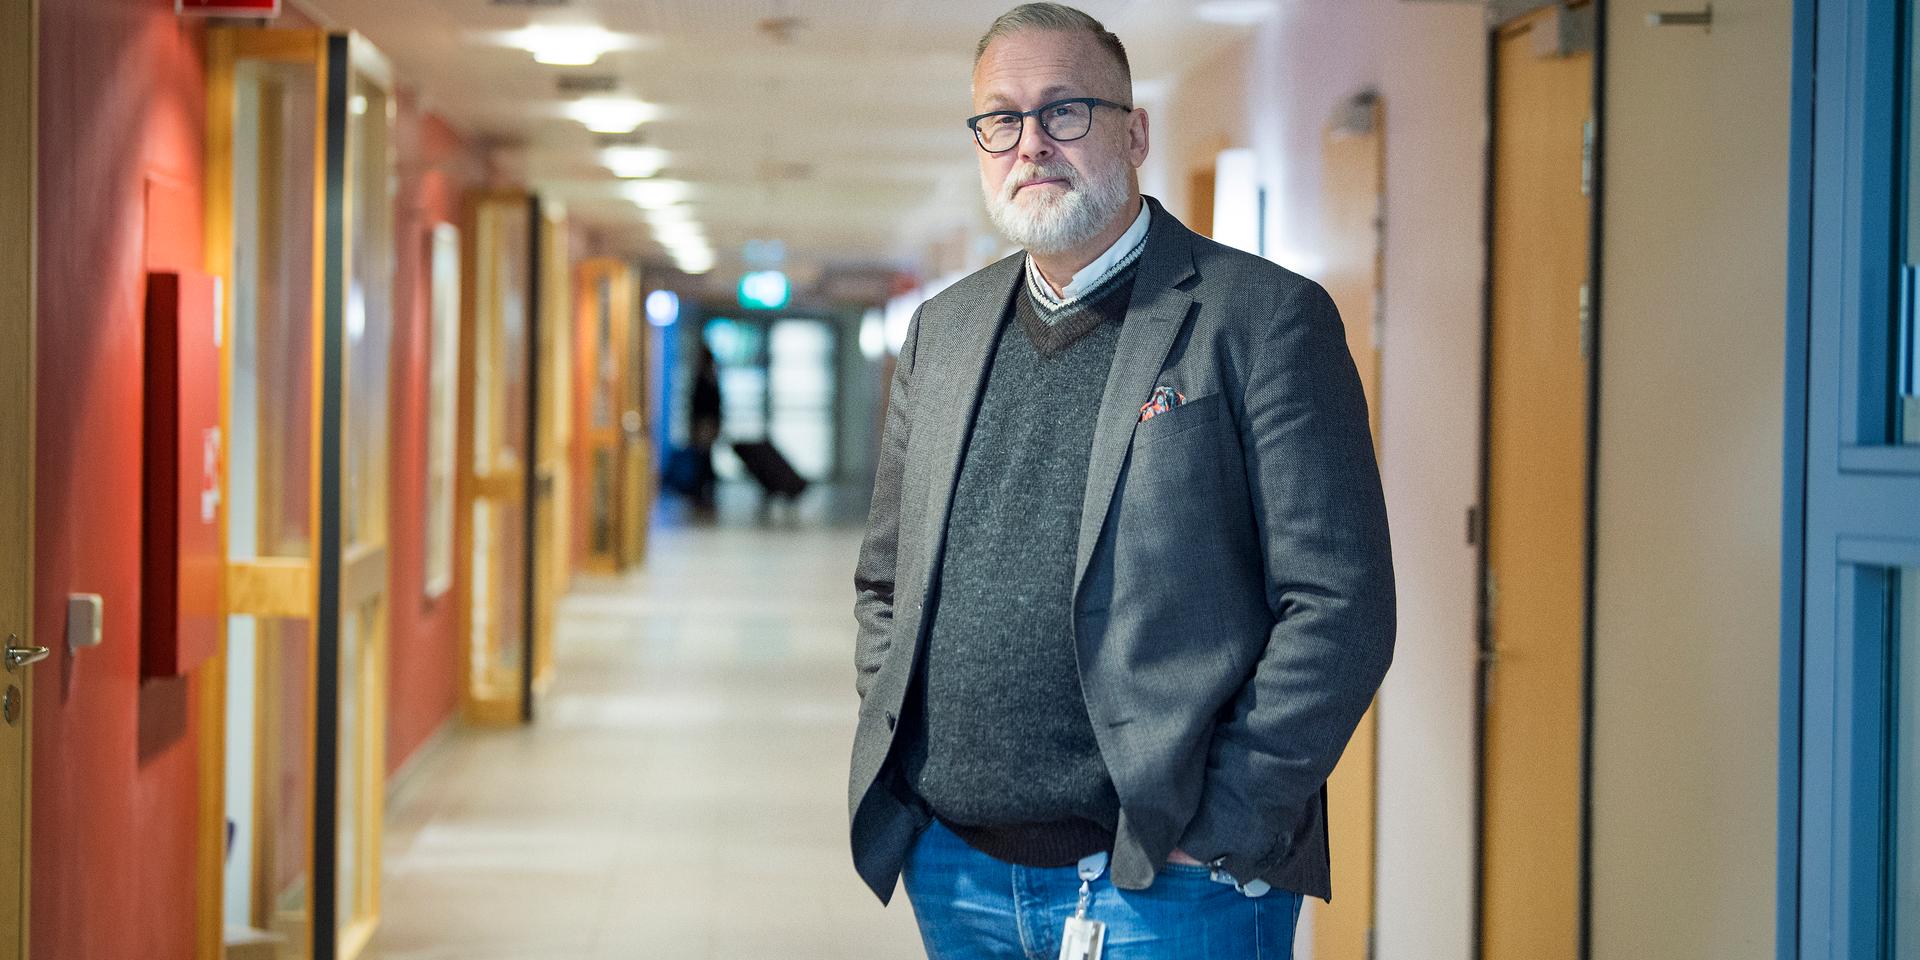 Anders Kullbratt, biträdande sjukhusdirektör på NU-sjukvården: ”Vi oroar oss att smittspridningen ökar när sommaren väl klingar av”.